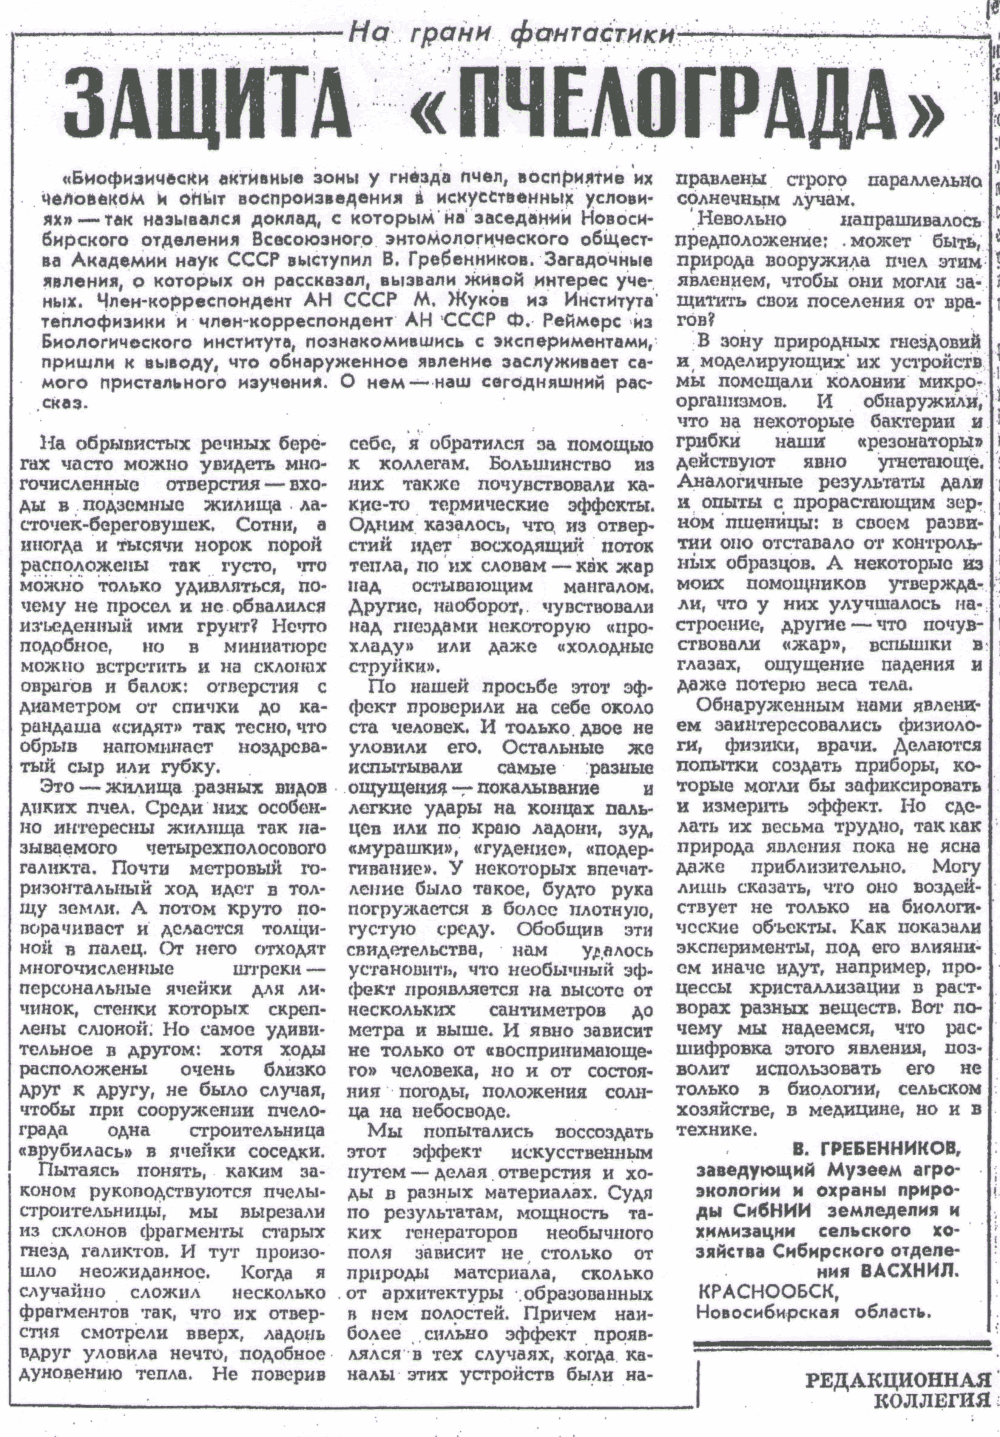 Защита Пчелограда. В.С. Гребенников. Социалистическая индустрия, 23.02.1984.